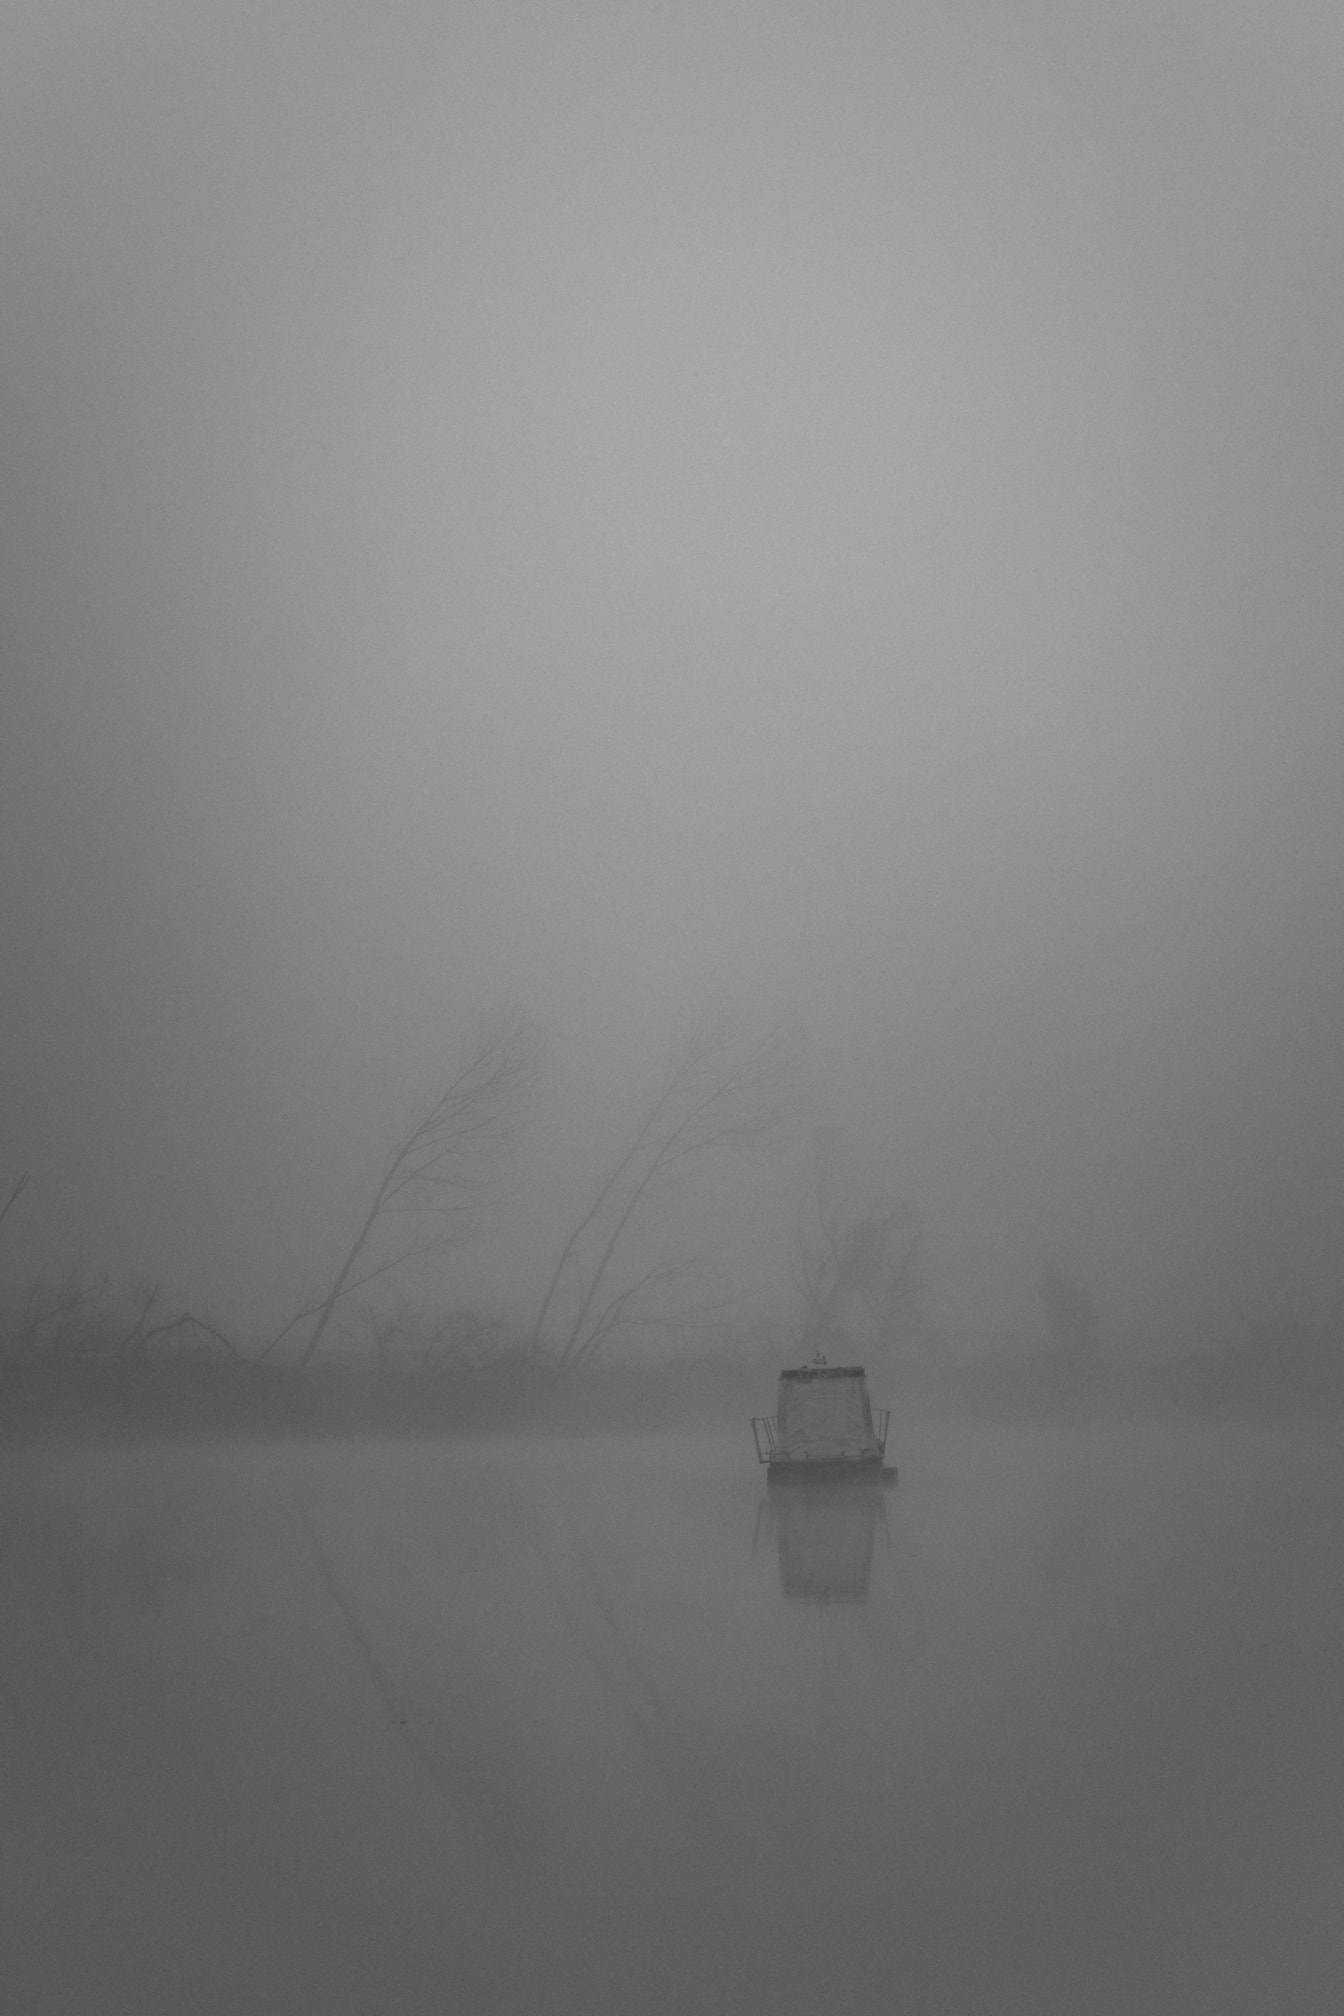 Ảnh phong cảnh đen trắng định hướng dọc của một chiếc thuyền trong sương mù